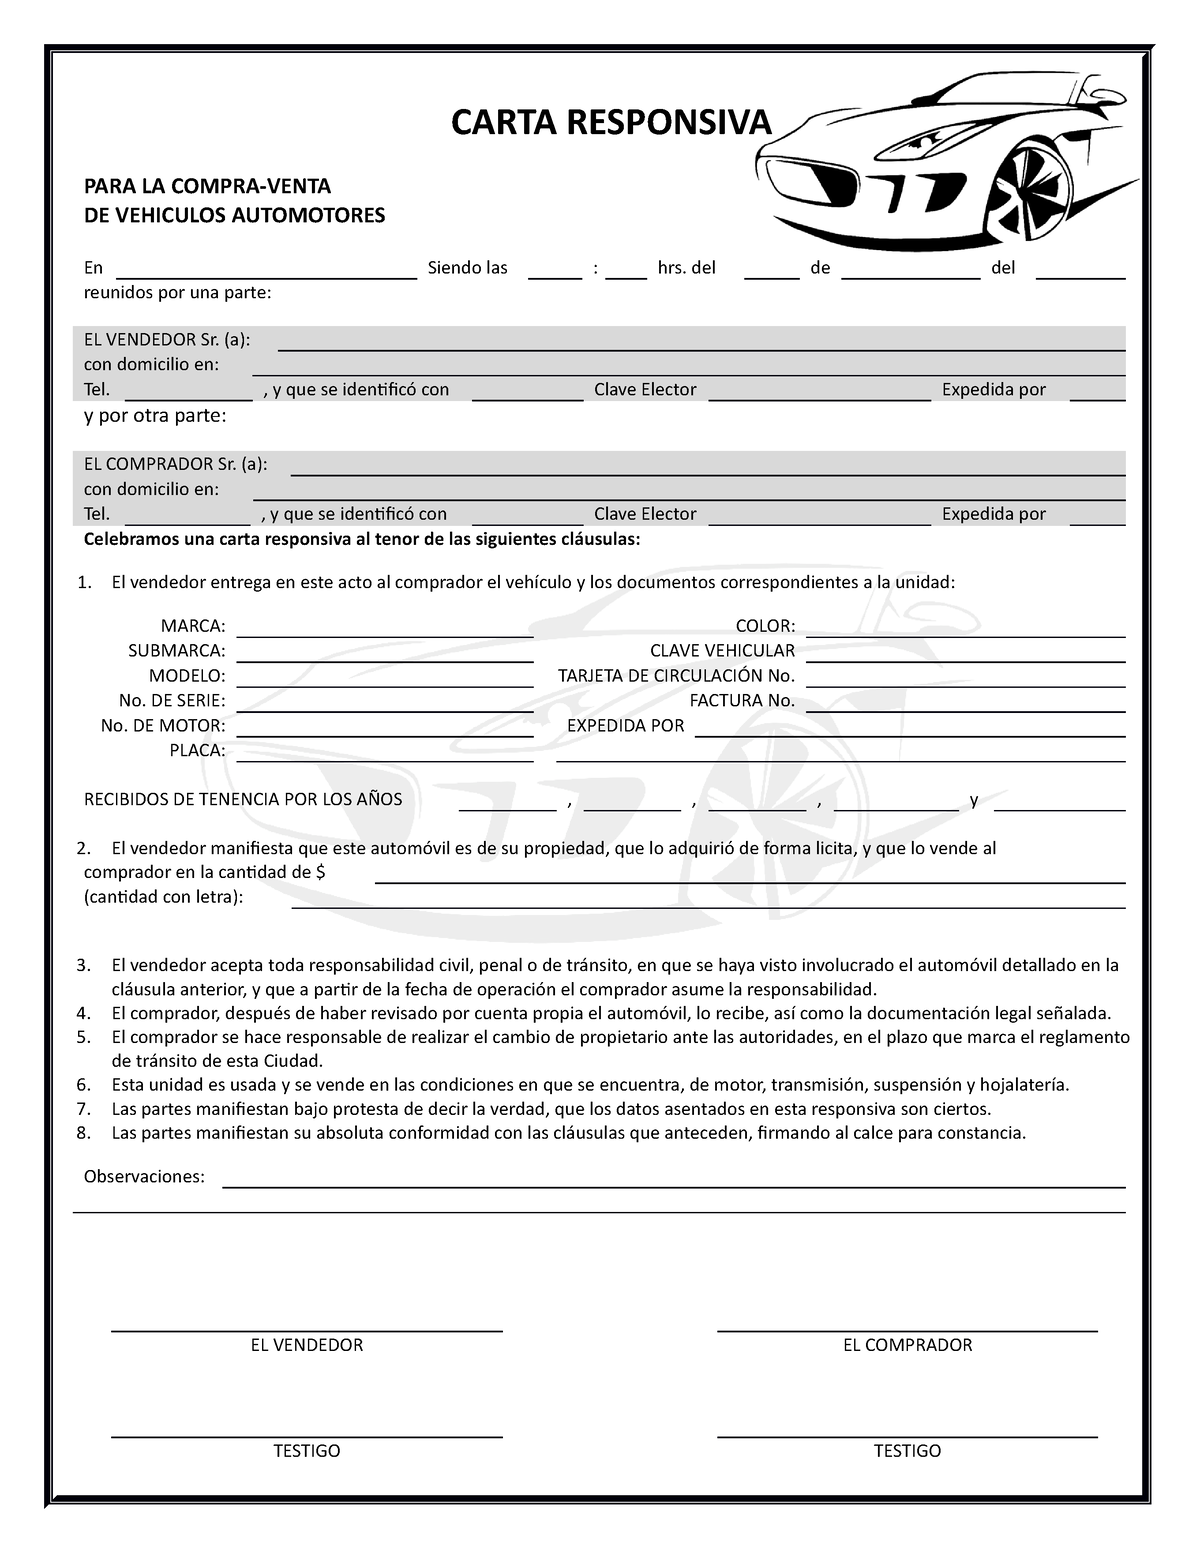 Carta Responsiva 2 - documento 2 - CARTA RESPONSIVA PARA LA COMPRA-VENTA DE  VEHICULOS AUTOMOTORES En - Studocu